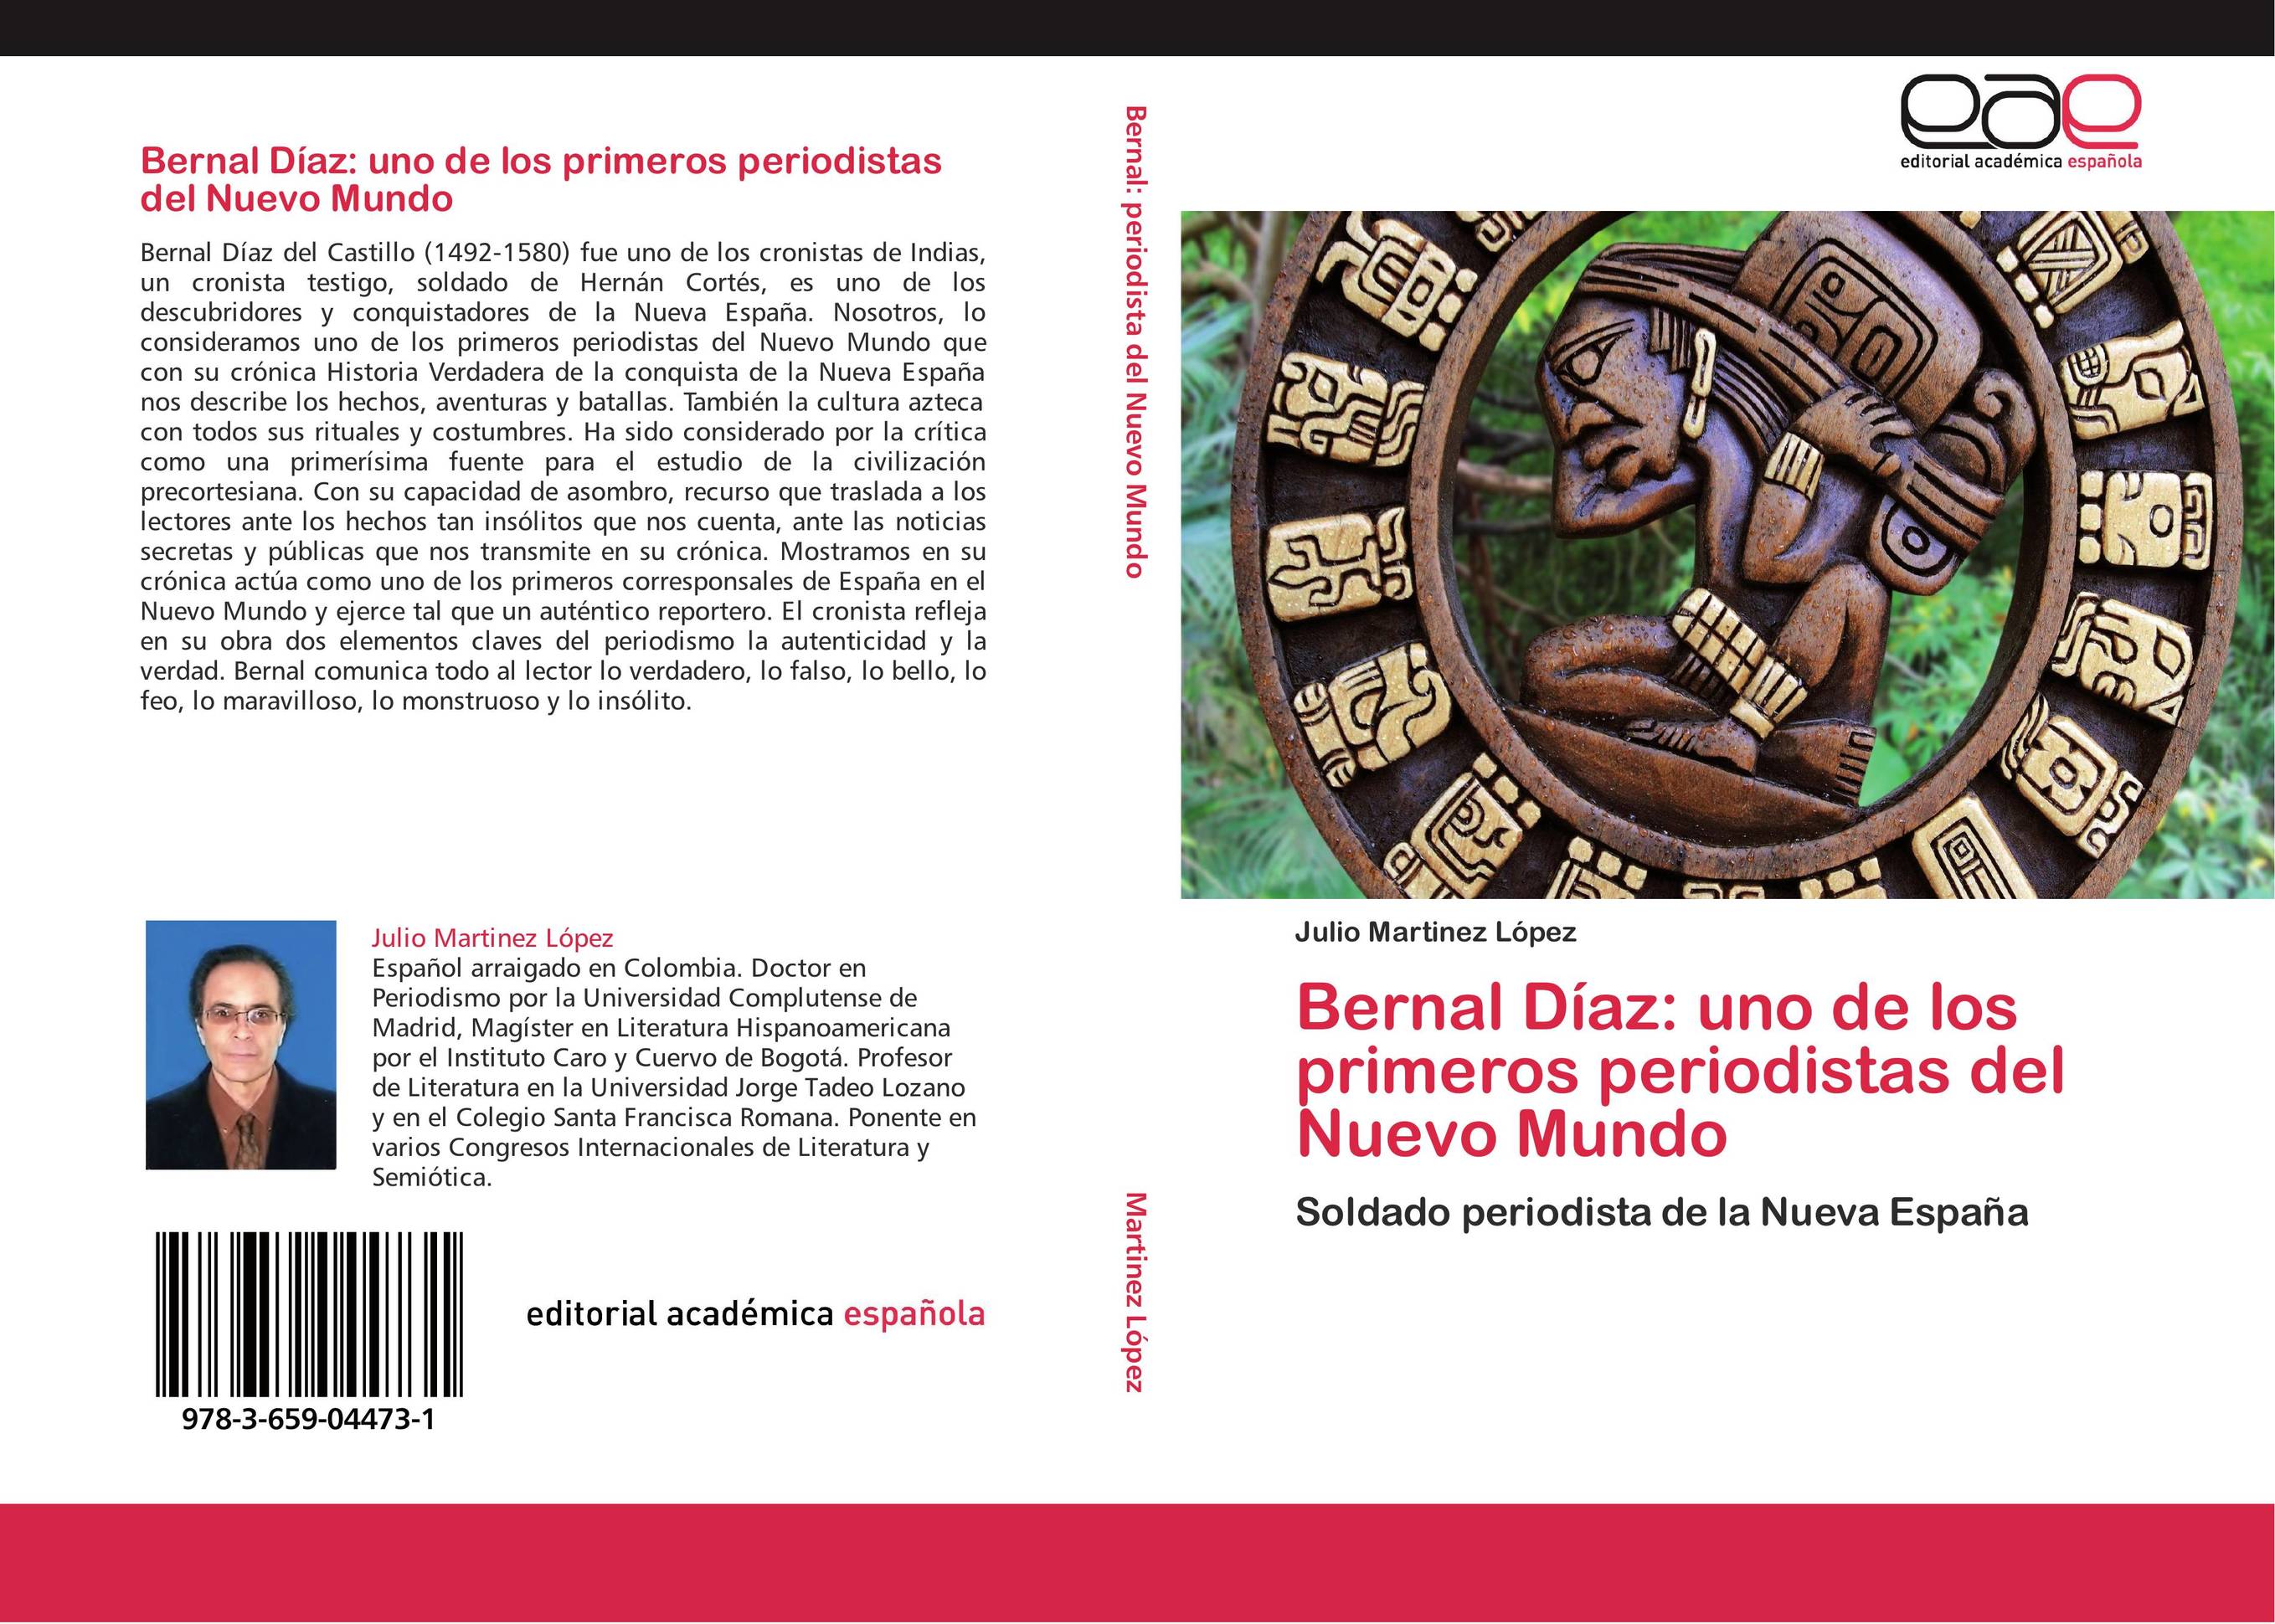 Bernal Díaz: uno de los primeros periodistas del Nuevo Mundo